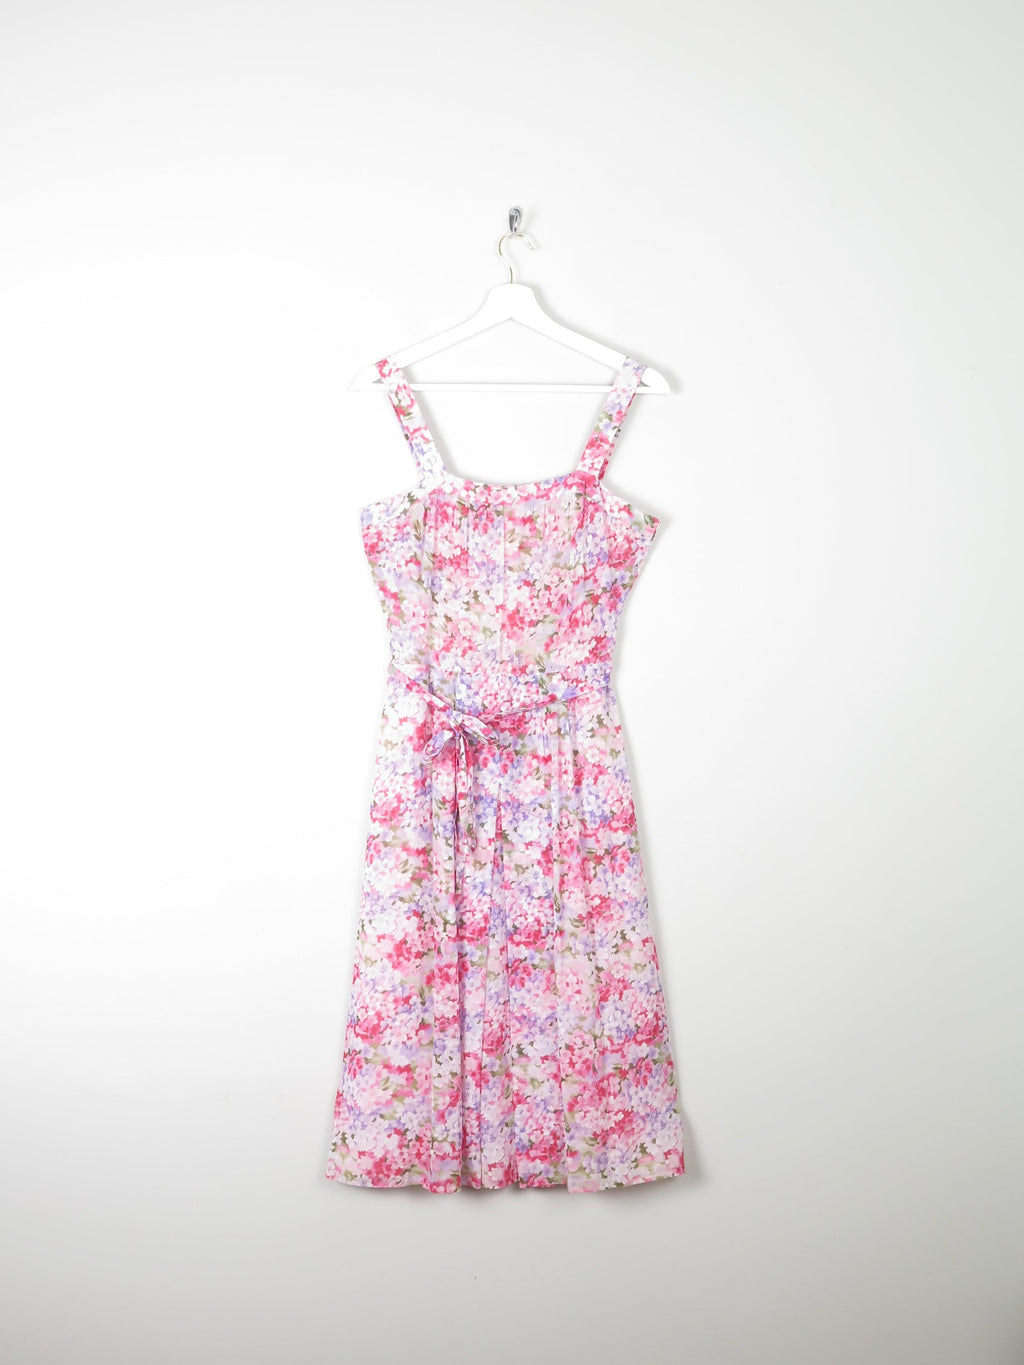 Floral Printed Pink Summer Vintage  Dress 10 - The Harlequin